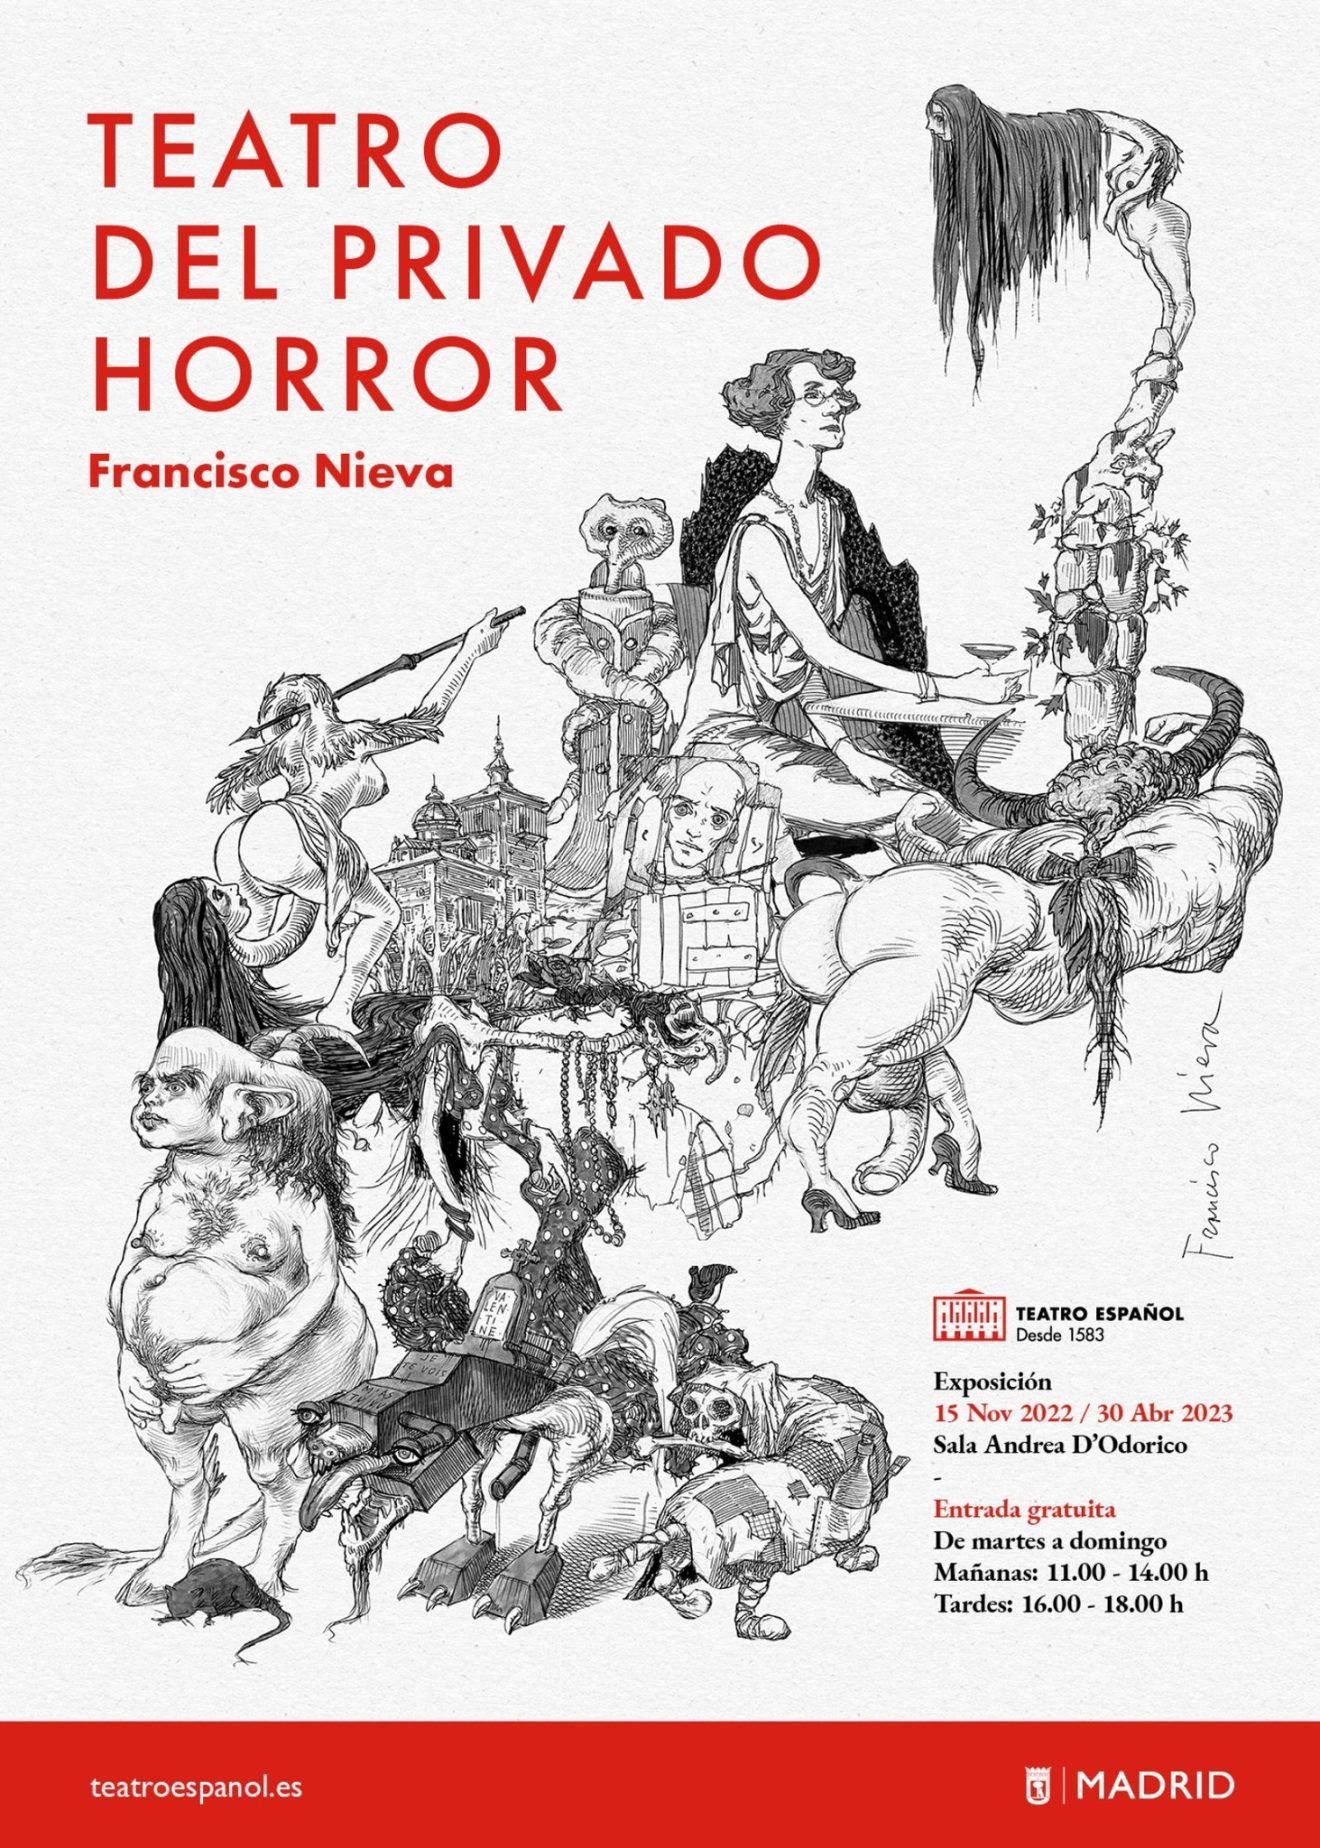 FRANCISCO NIEVA TEATRO DEL PRIVADO HORROR, en el Teatro Español - Madrid Es Teatro